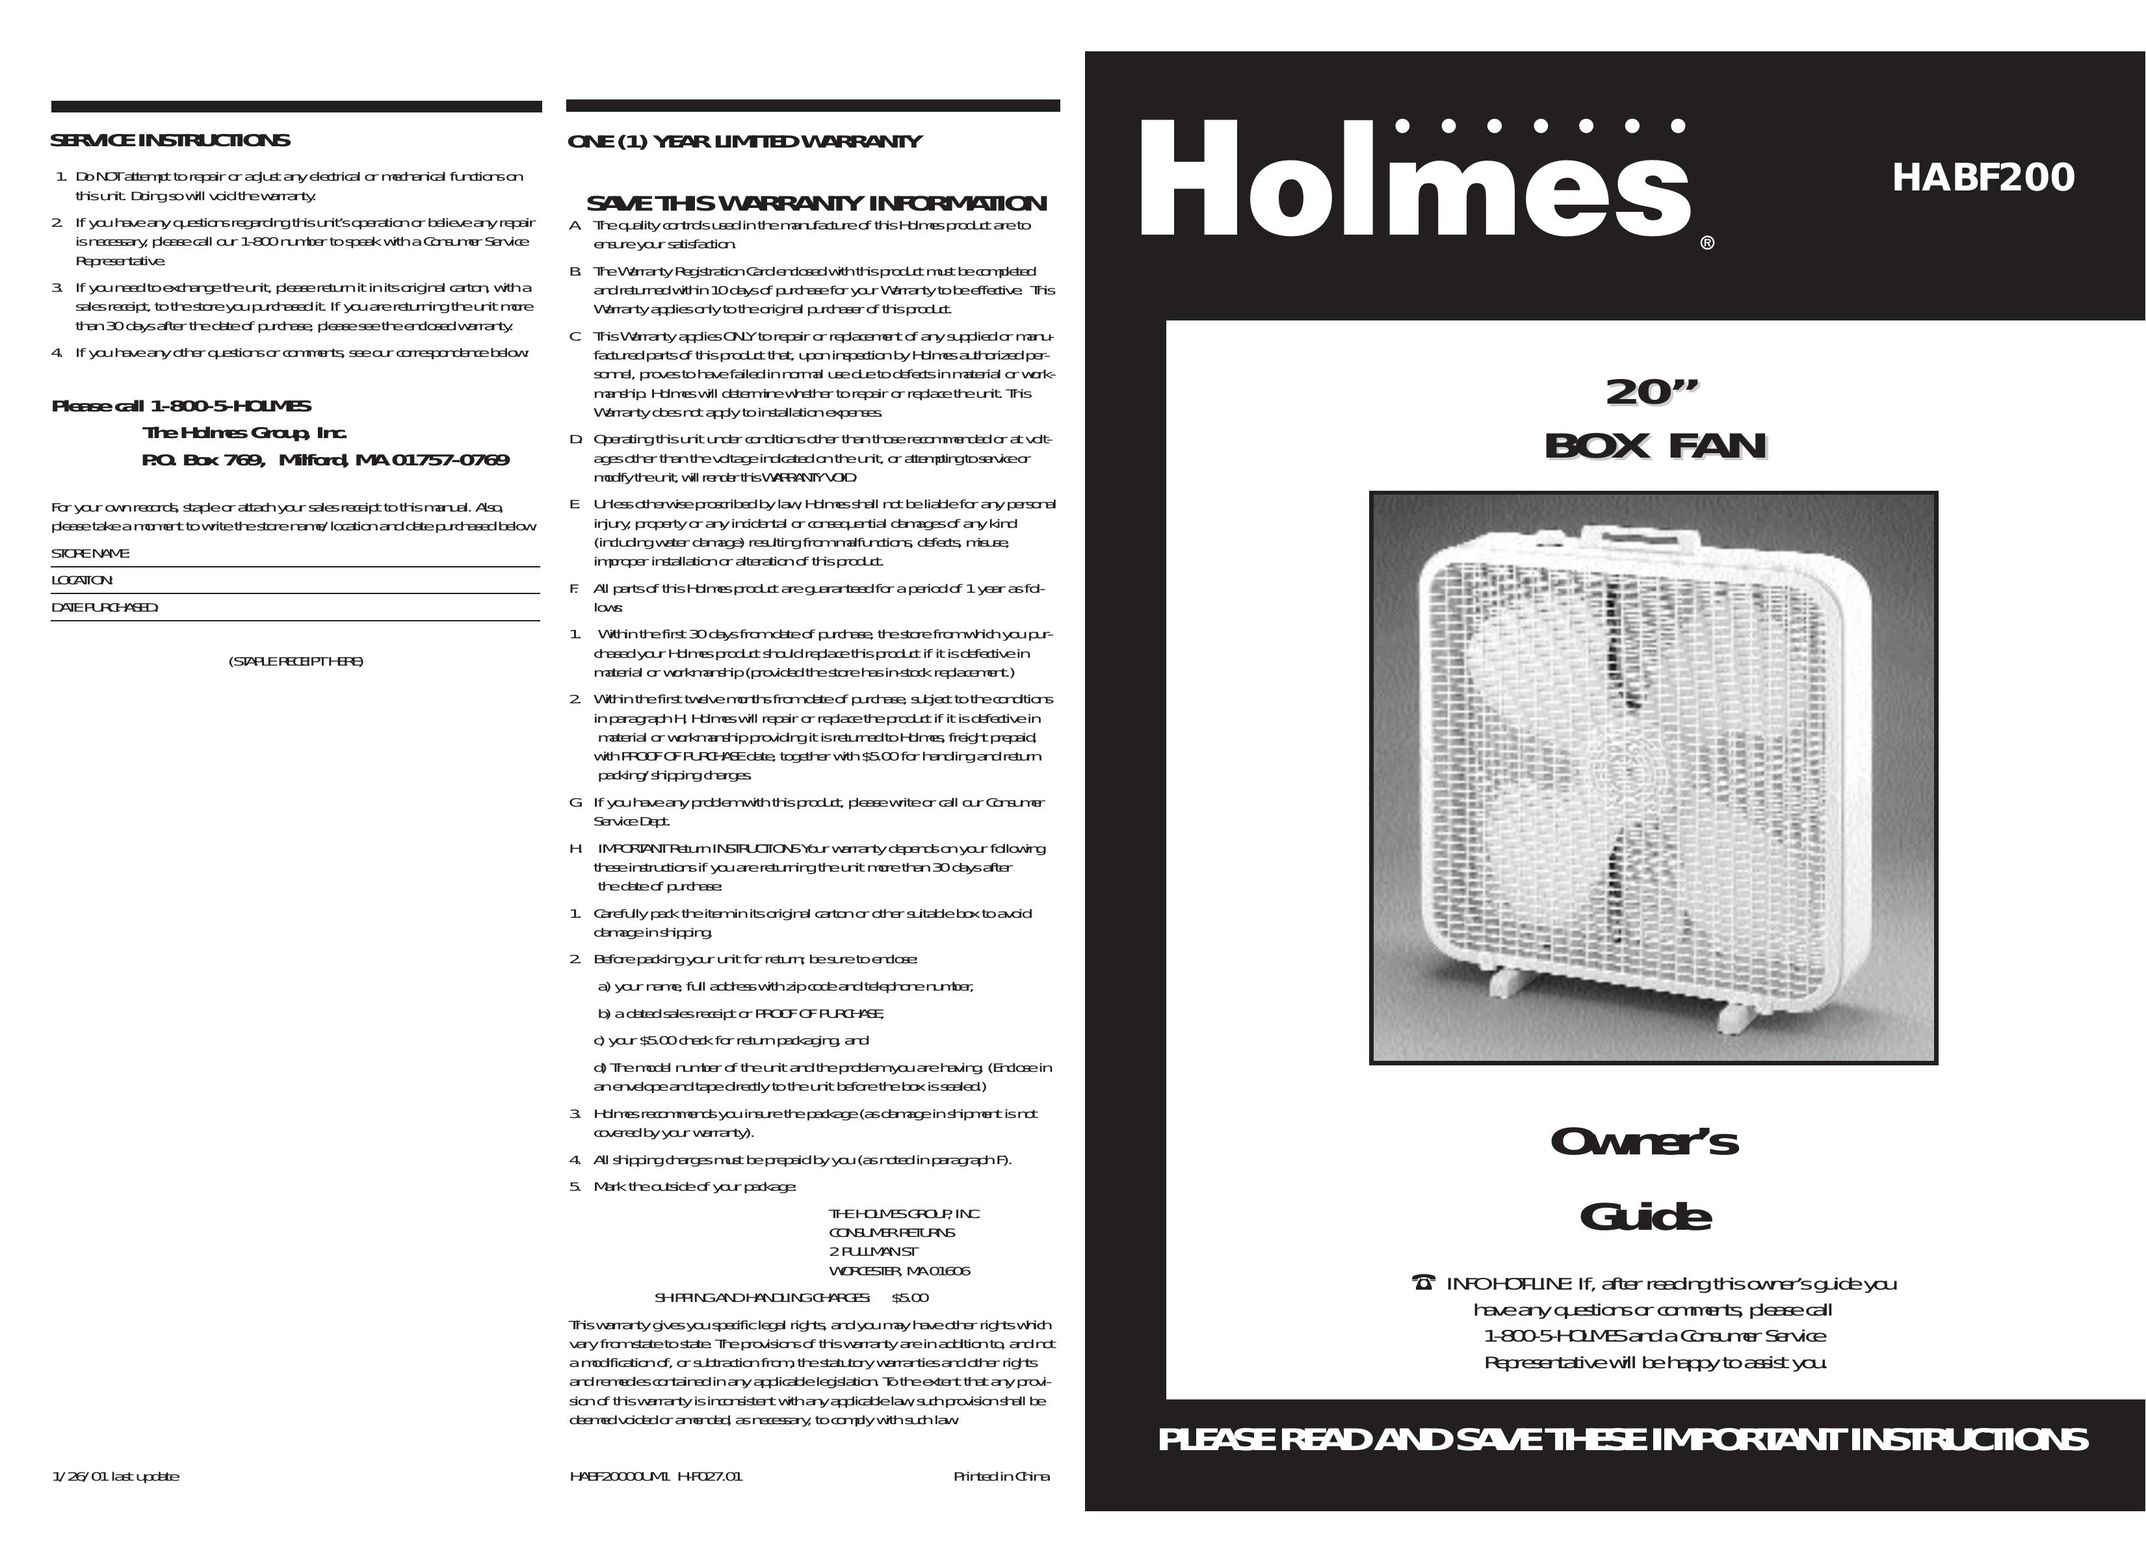 Holmes HABF200 Fan User Manual